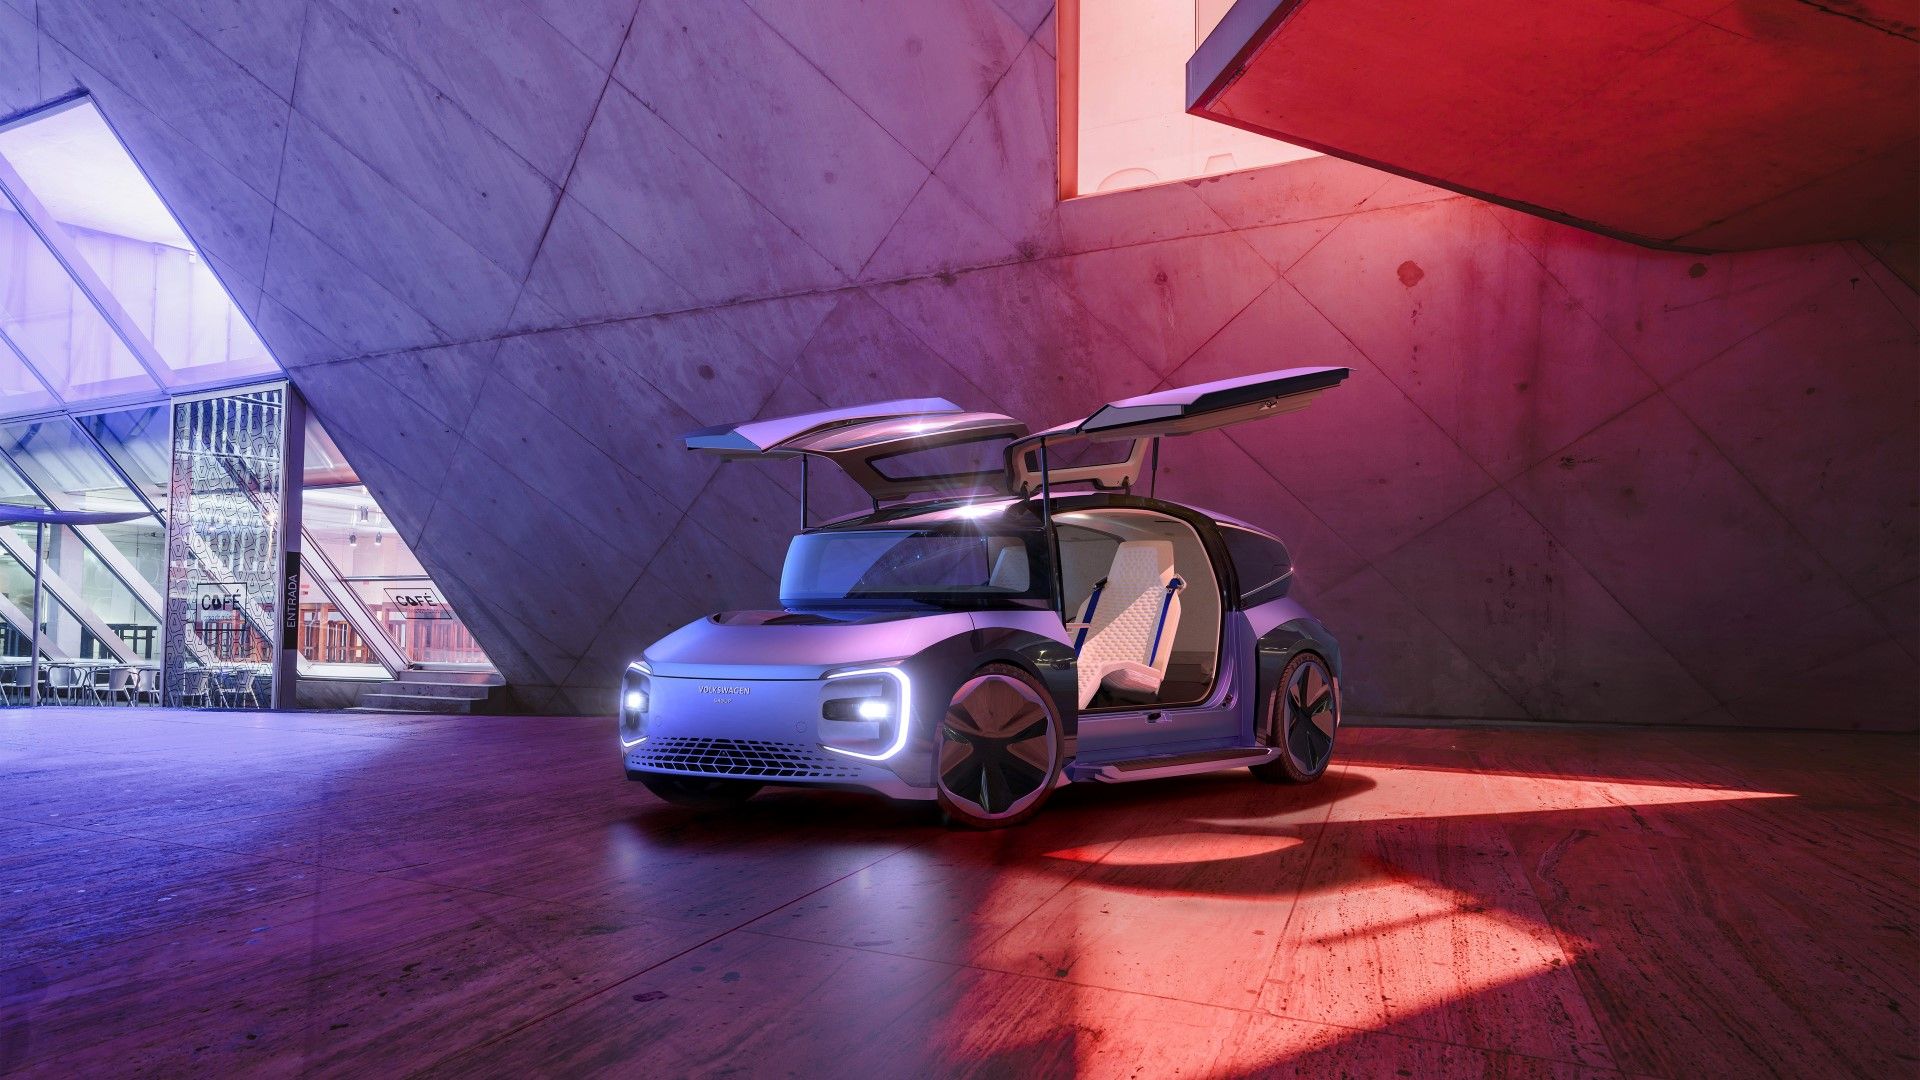 Η Volkswagen παρουσίασε το Concept Gen.Travel, το οποίο μπορεί να οδηγηθεί χωρίς τιμόνι και προάγει την αυτόνομη οδήγηση.